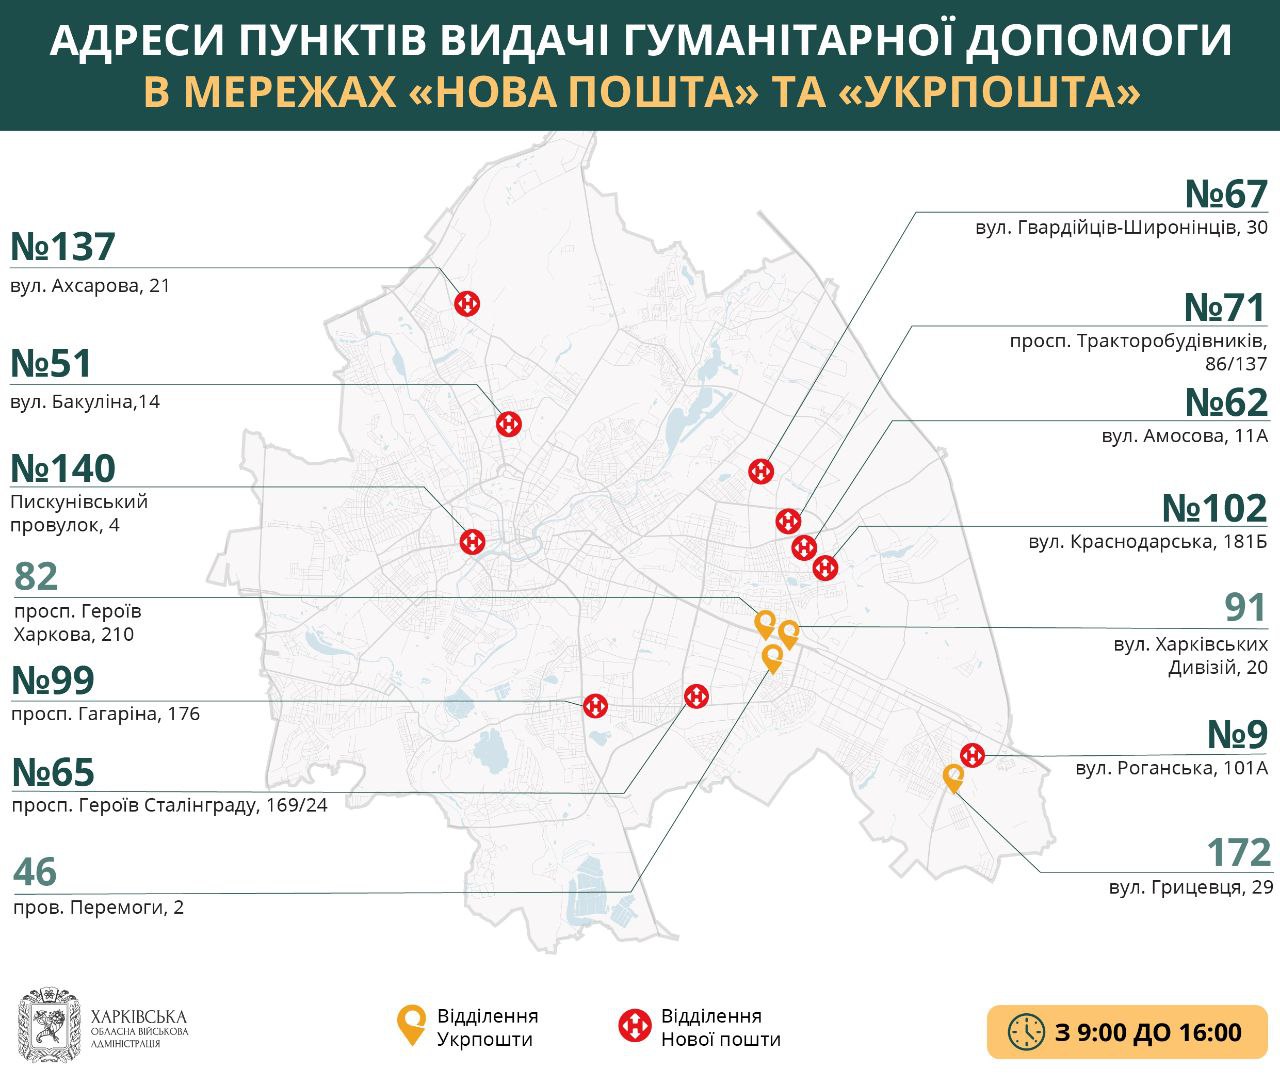 Где выдают гуманитарную помощь в Харькове 6 июля (карта)